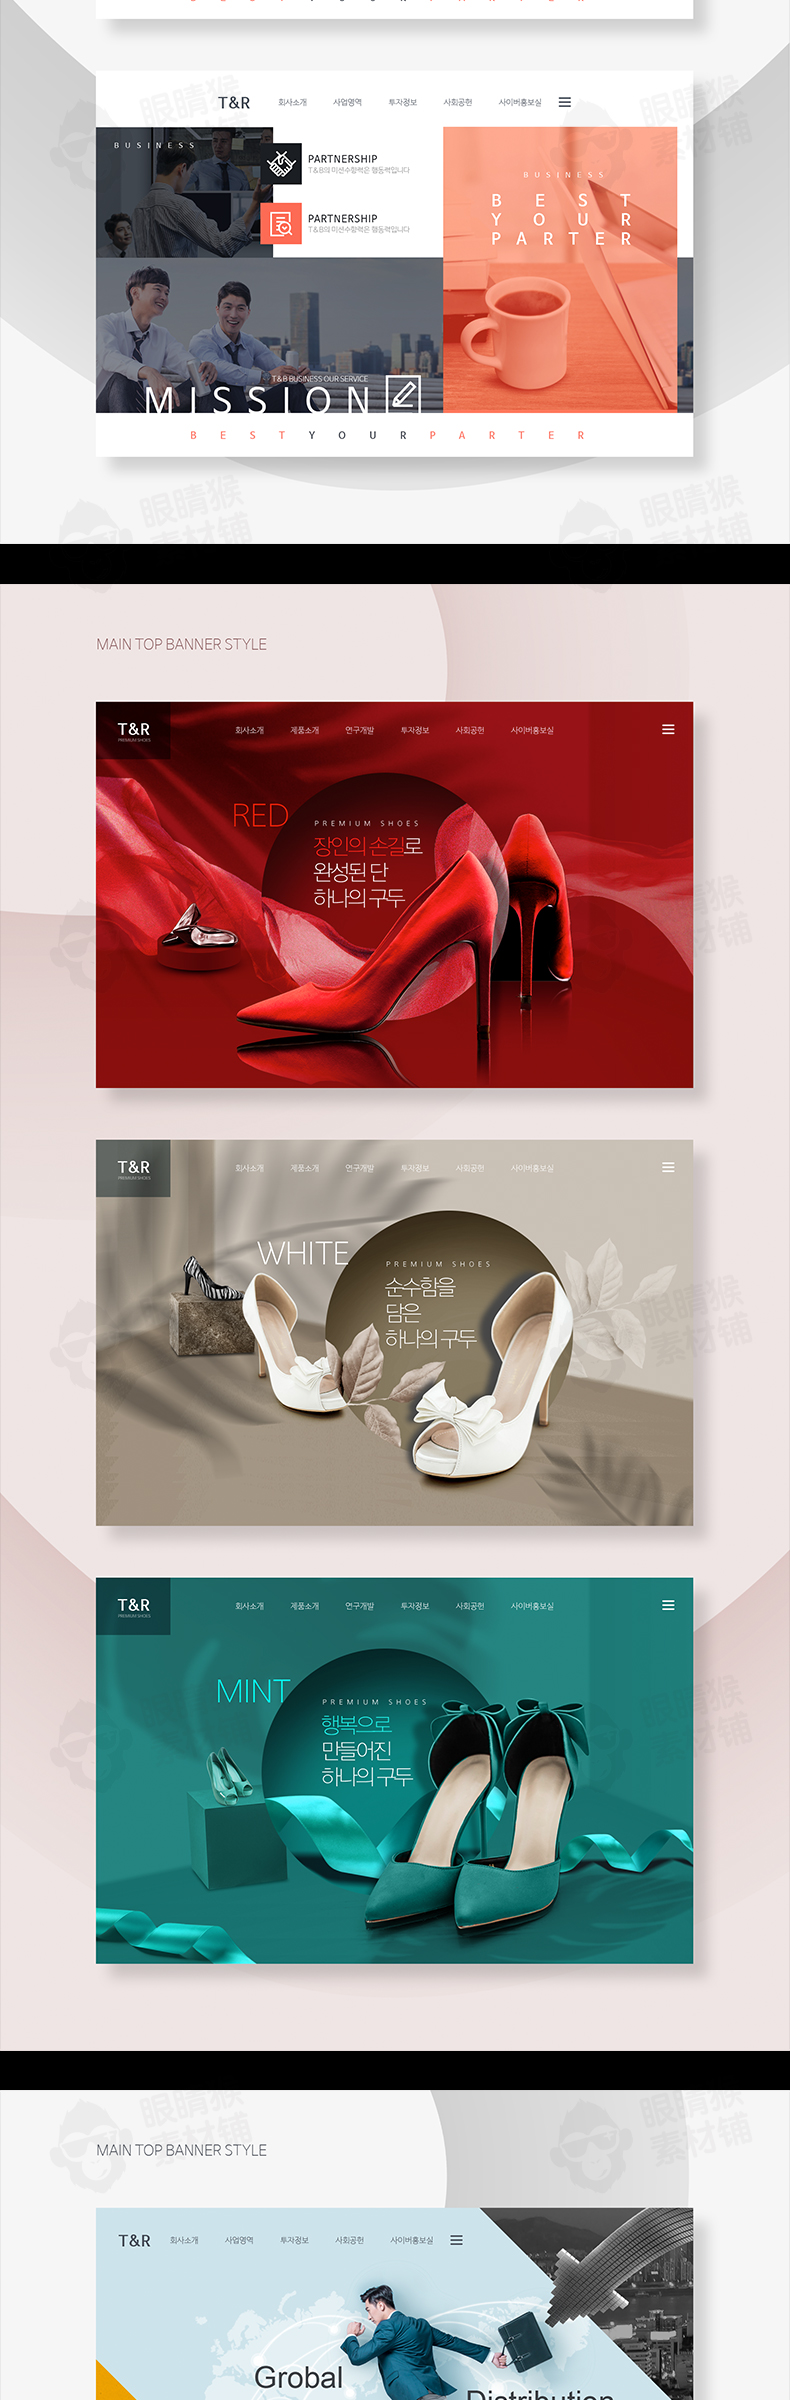 日韩金融爱情5G医美商务医疗健康女鞋风格主题海报psd设计模板-海报素材-到位啦UI